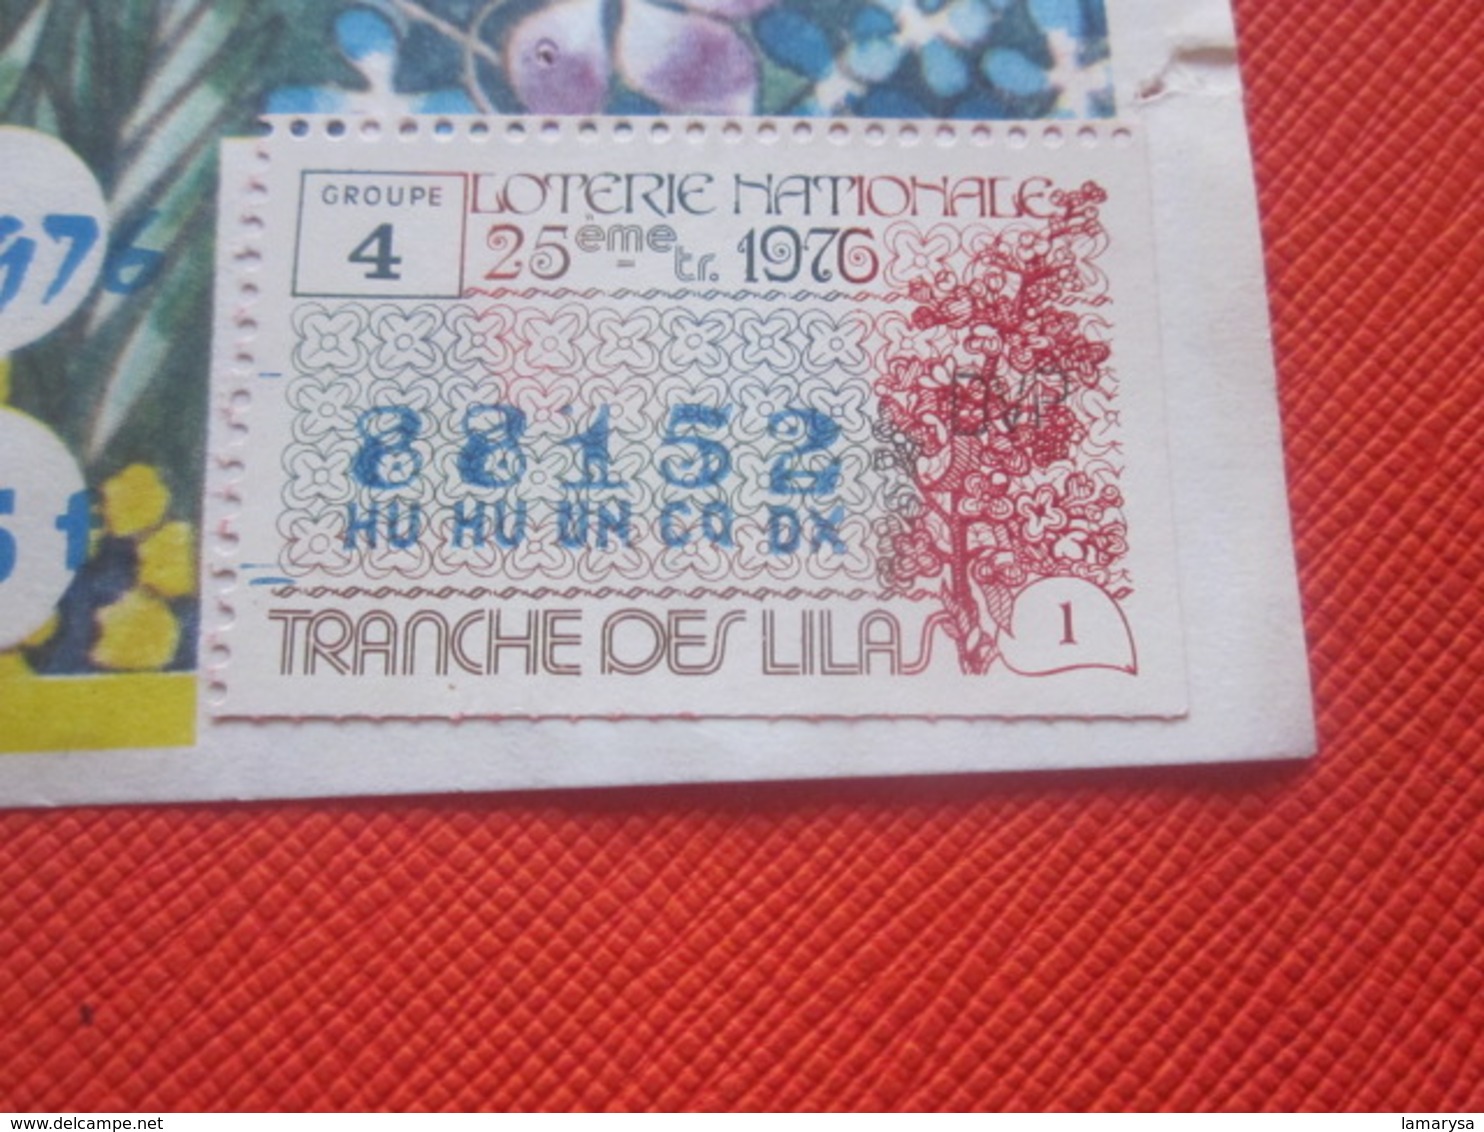 1976-1/10é ROSA--TRANCHE DES LILAS -EUROSUD-Billet De La Loterie Nationale+VIGNETTE-IMPRIMÉE TAILLE DOUCE - Billets De Loterie